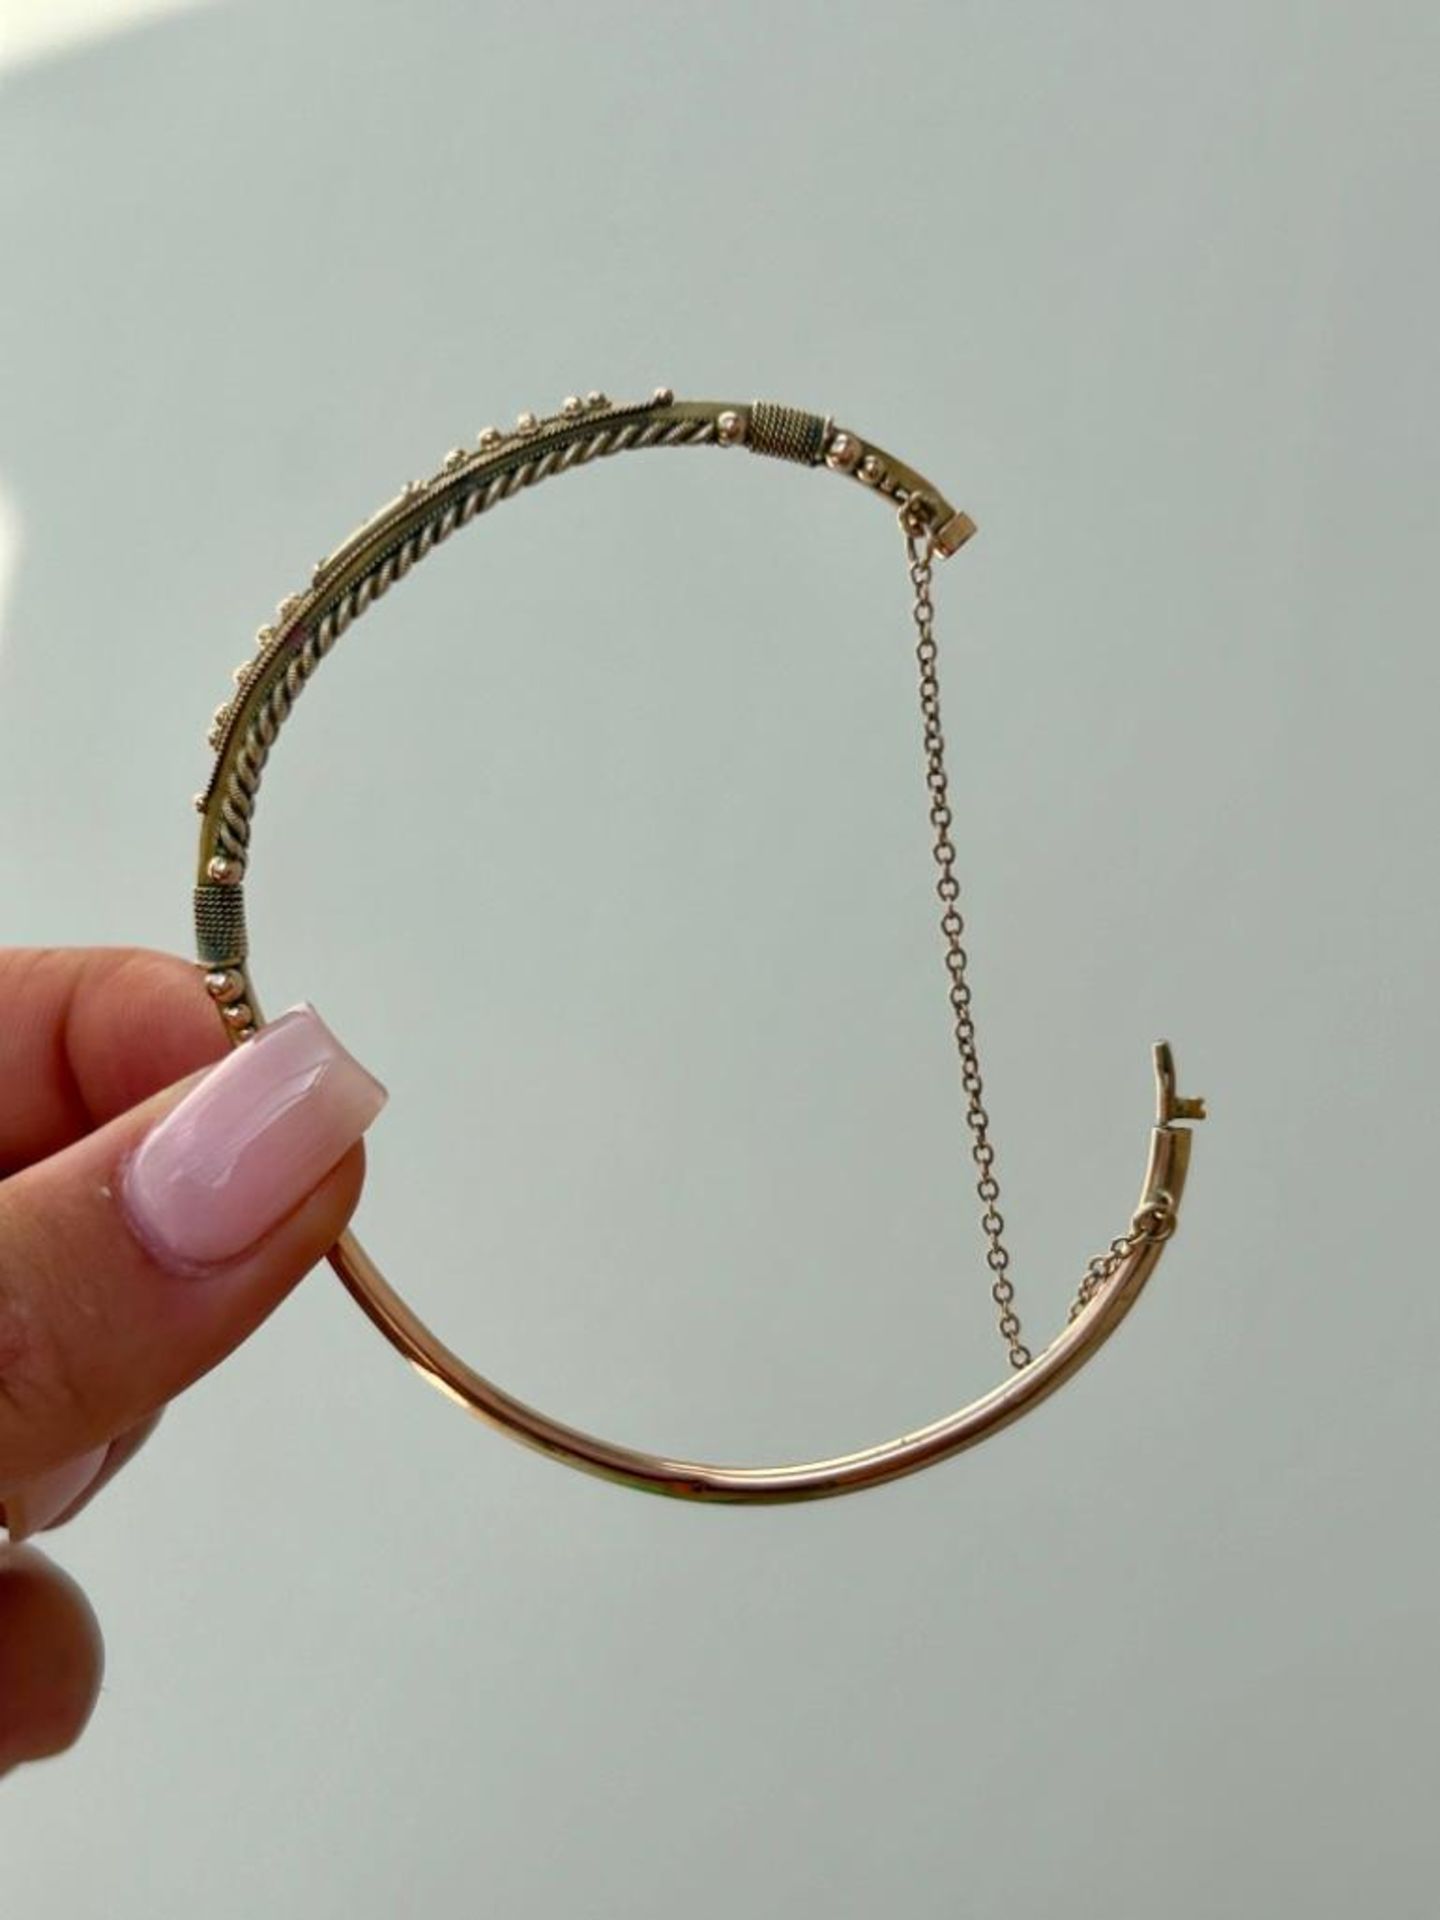 Antique Gold Diamond Bangle Bracelet - Image 4 of 6